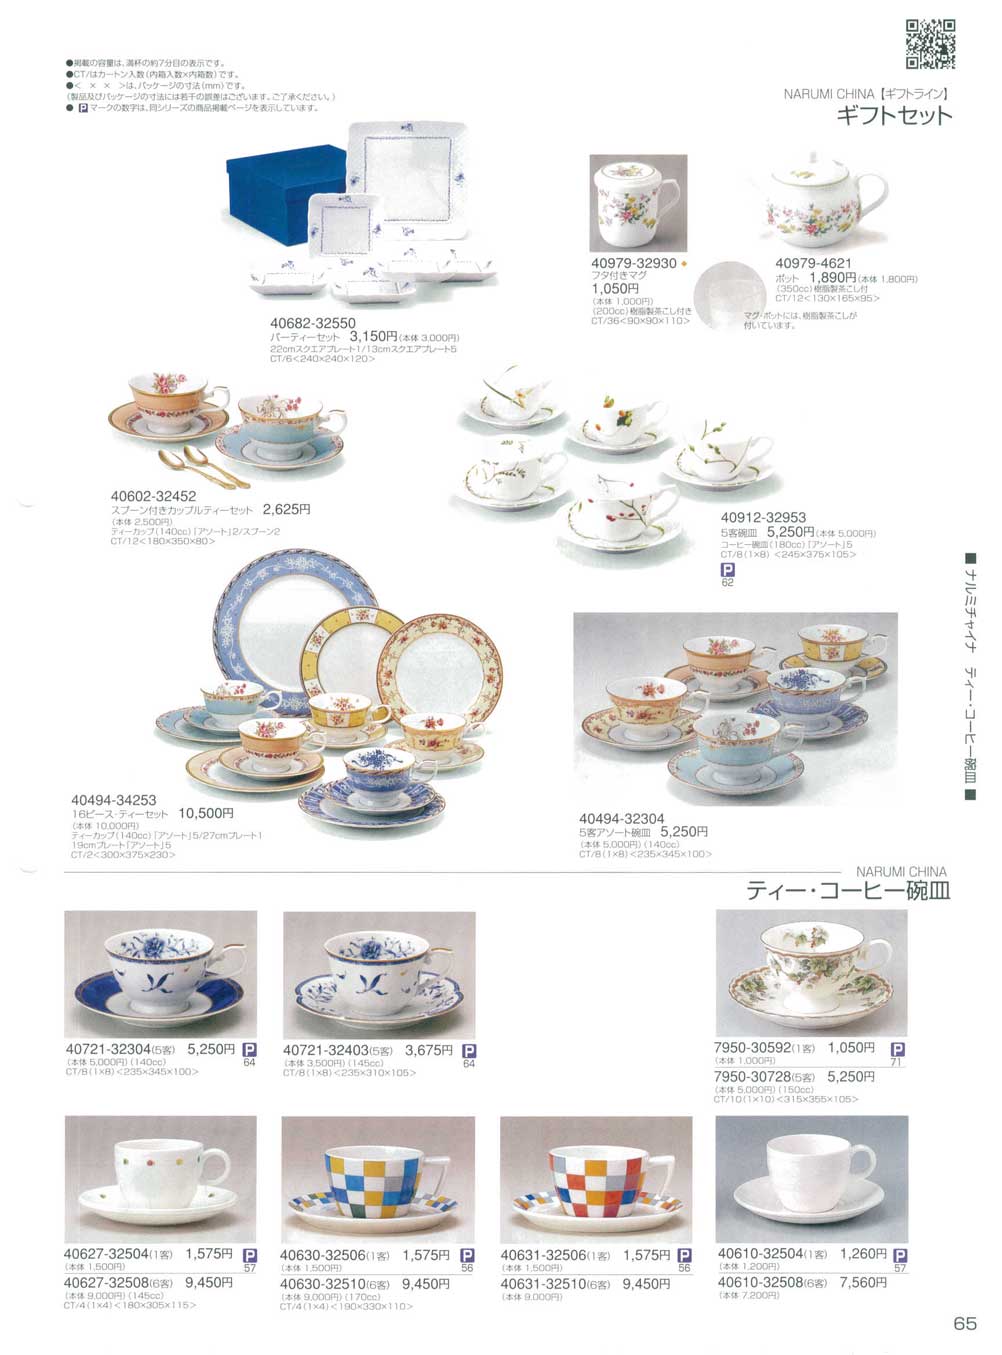 食器 ギフトセット・ティー・コーヒー碗皿ナルミ総合カタログ２０１０年 ナルミボーンチャイナ・ナルミチャイナ 鳴海製陶株式会社－65ページ